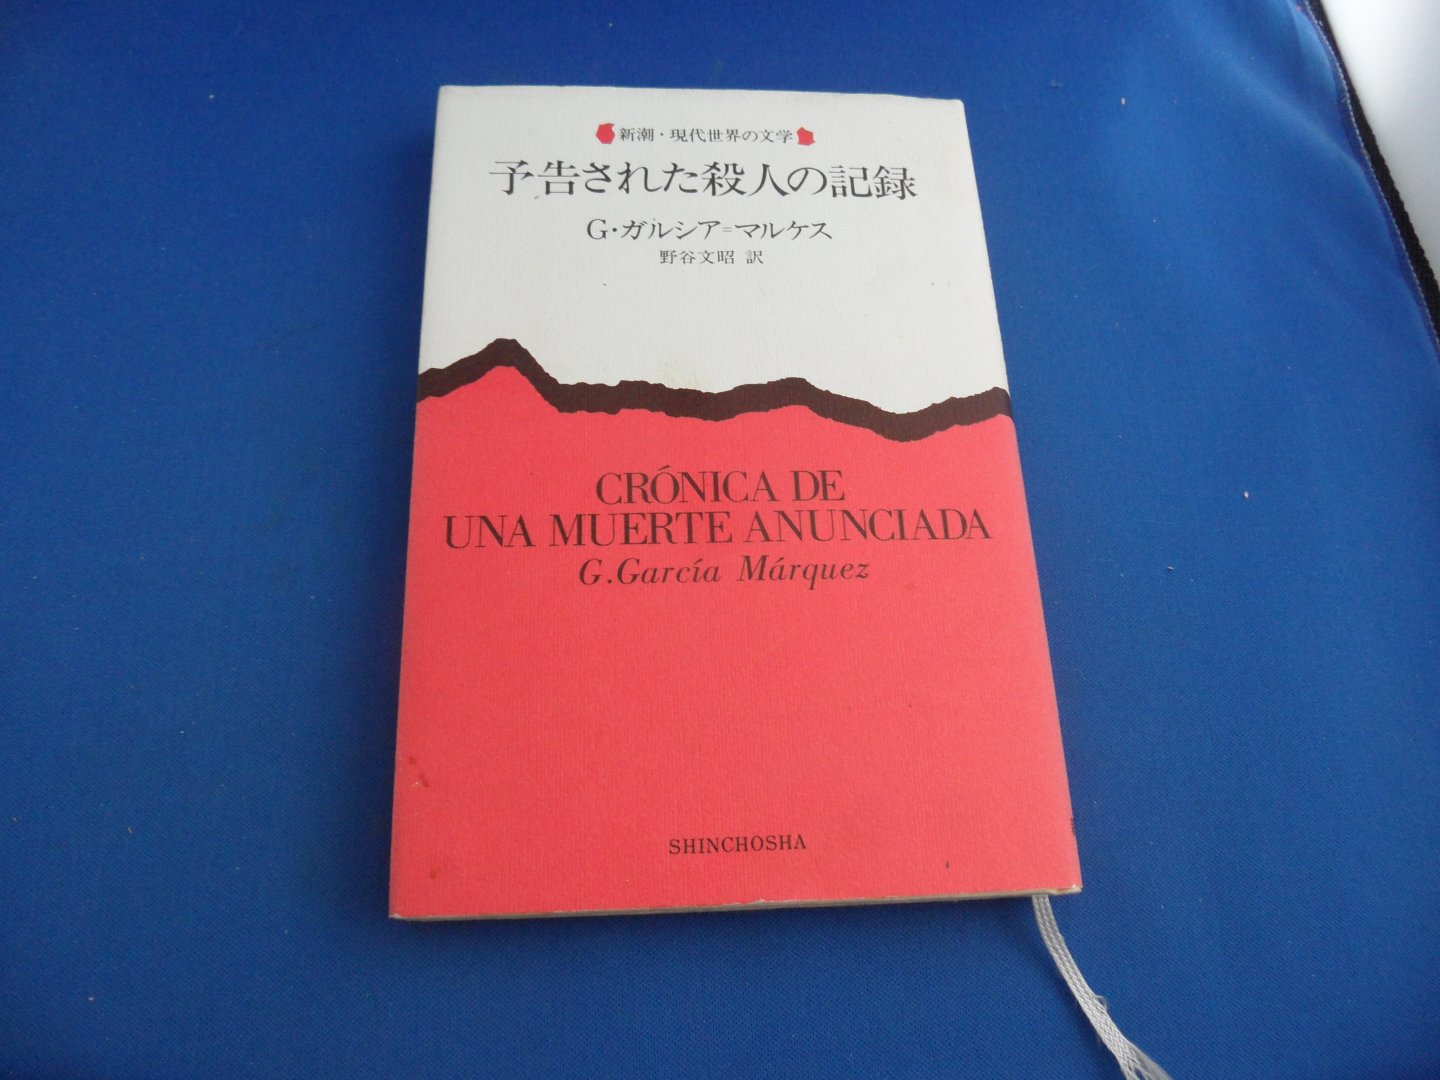 Marquez, Gabriel Garcia - Crónica de una muerte anunciada. Japanese version/ Japanse uitgave